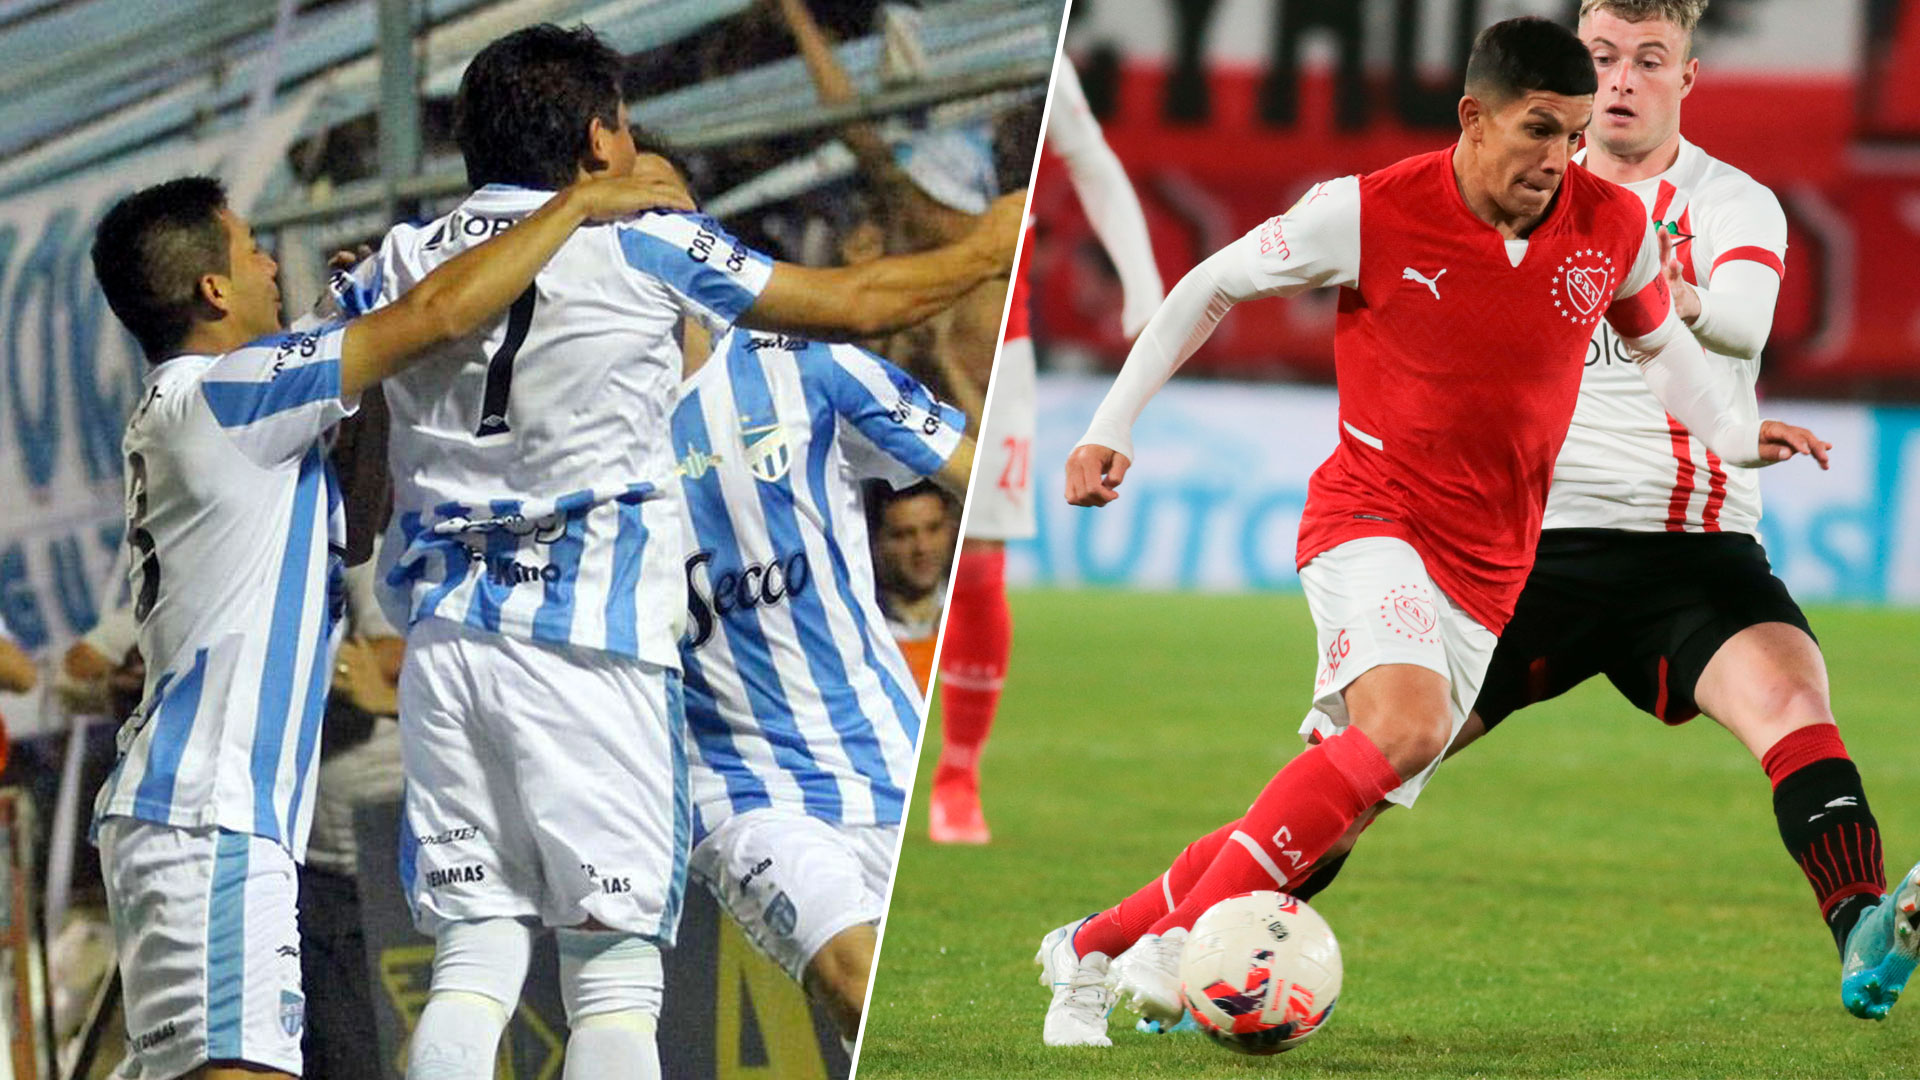 Independiente dan Atlético Tucumán bertemu di Piala Argentina (Foto: @fotobairesarg)